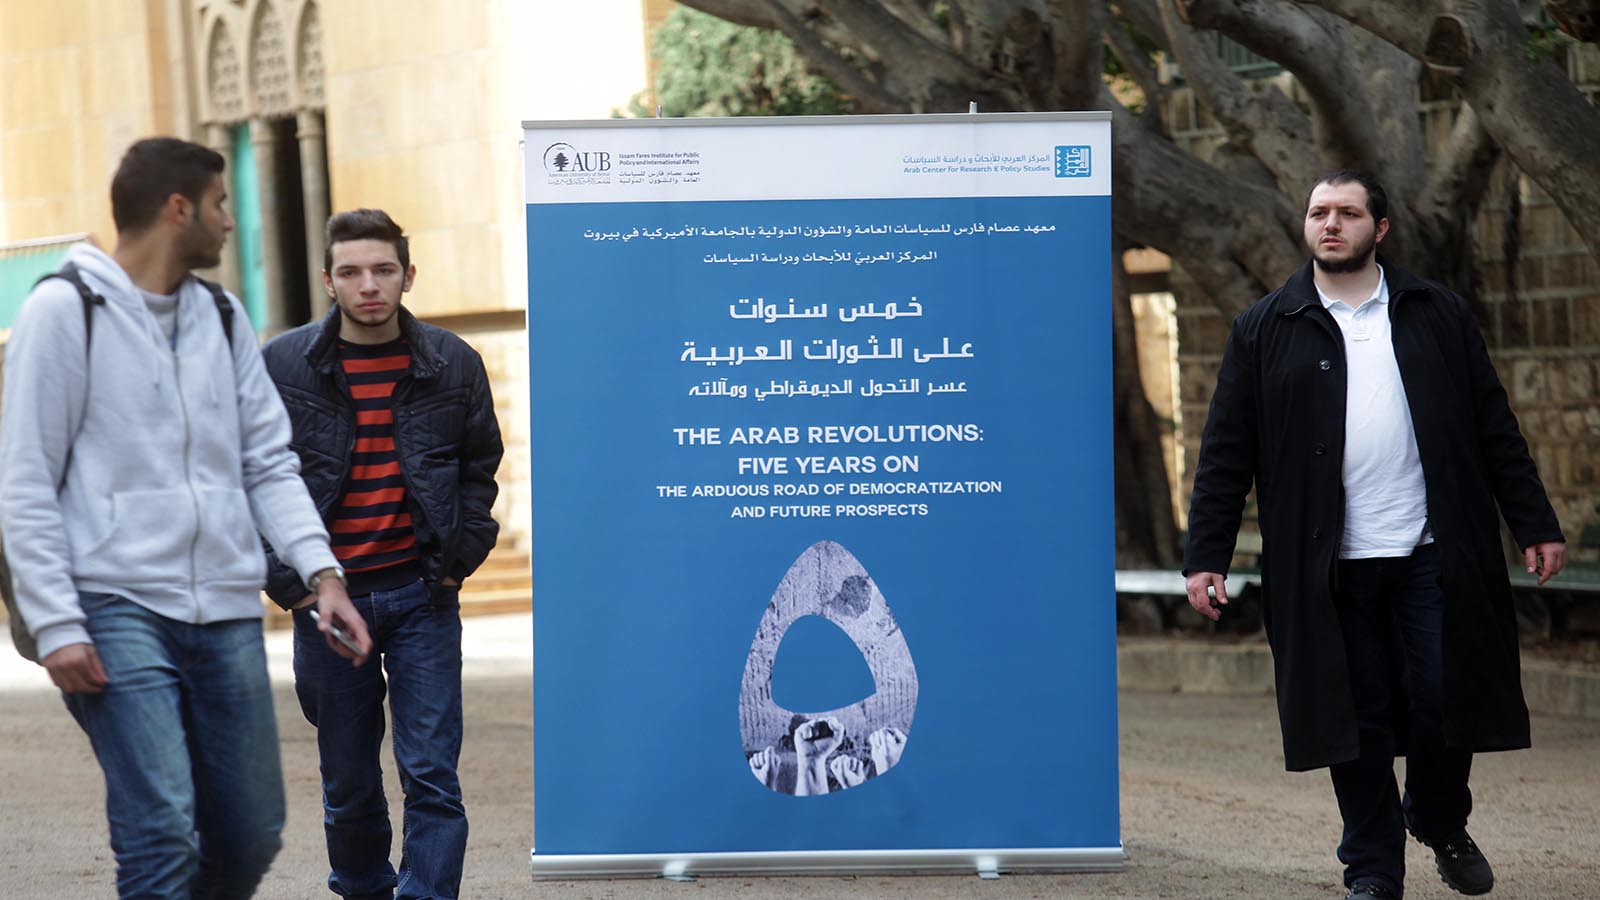 الرأي العام العربي والثورات: 59% يعتبرون "الربيع العربي" سلبياً